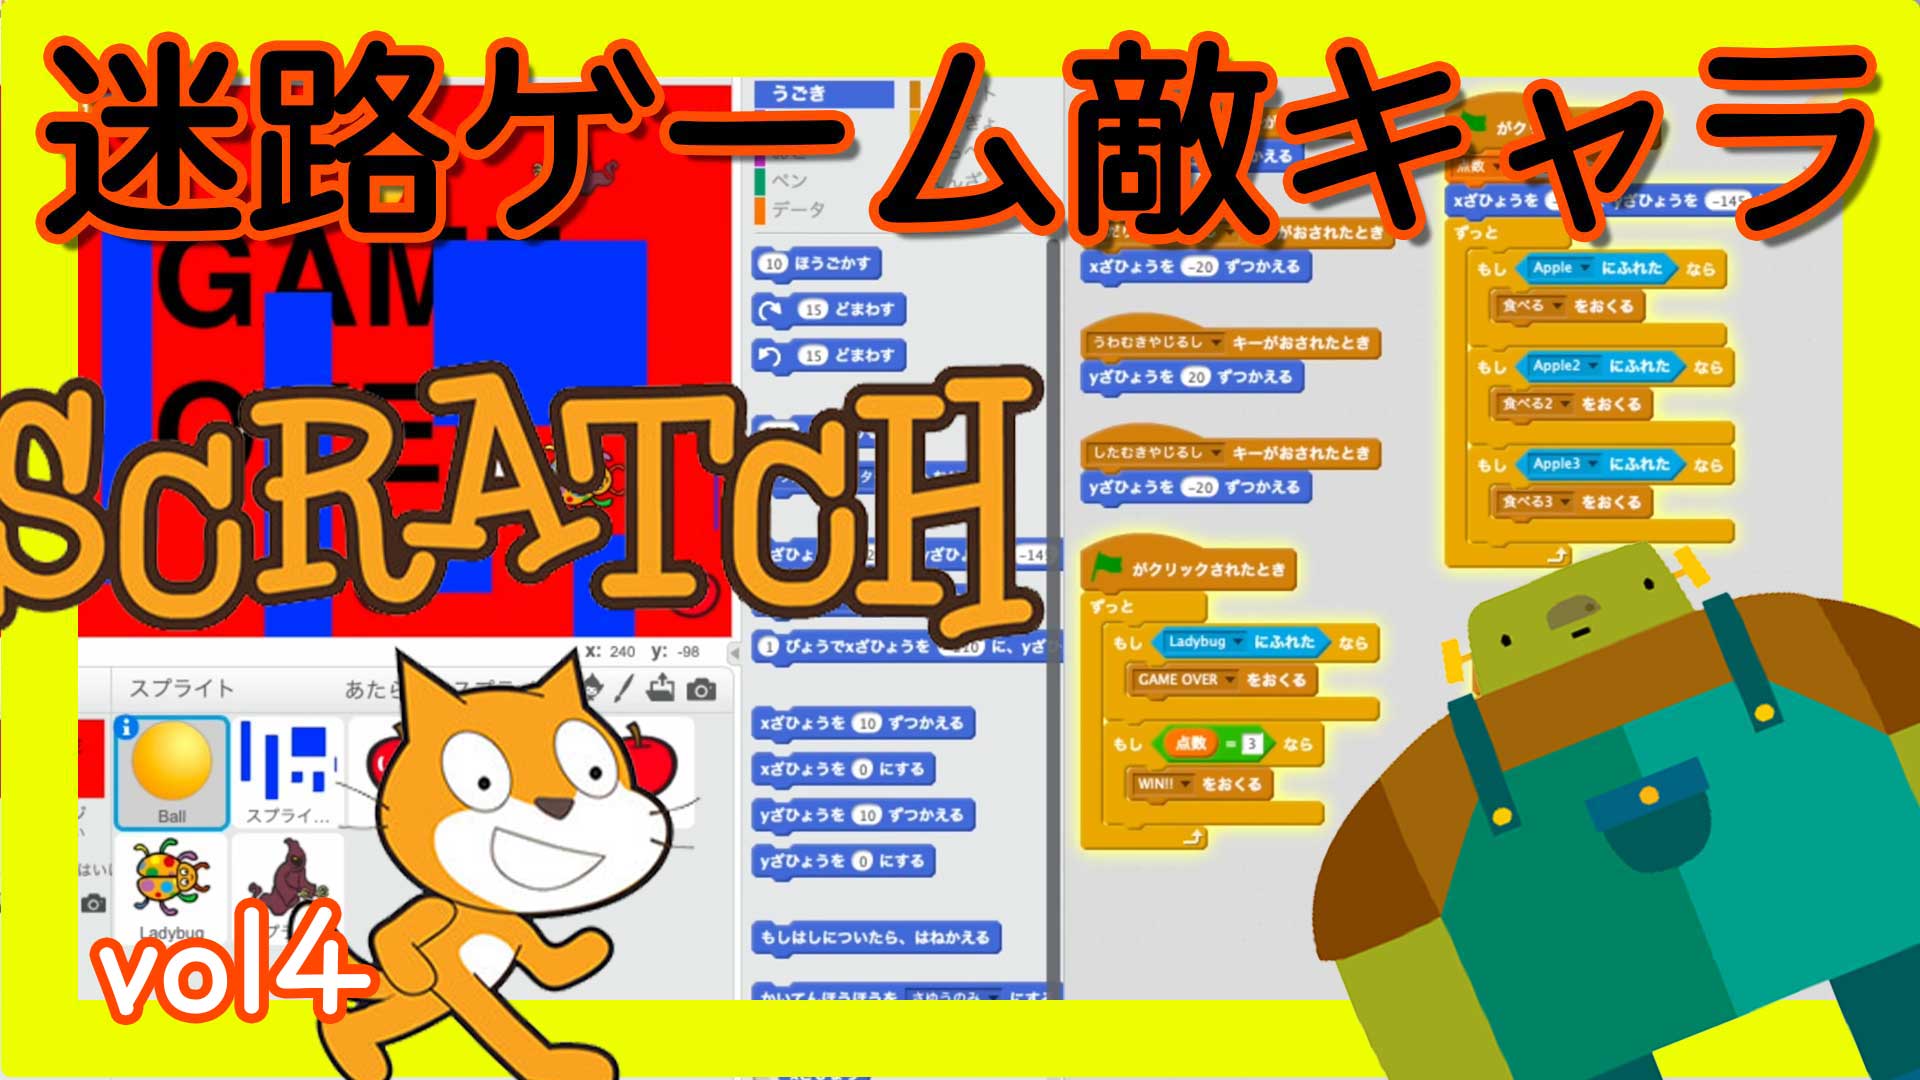 スクラッチゲームプログラミング 迷路敵キャラvol4 プロジェクションマッピング作り方 Scratch Touchdesigner使い方